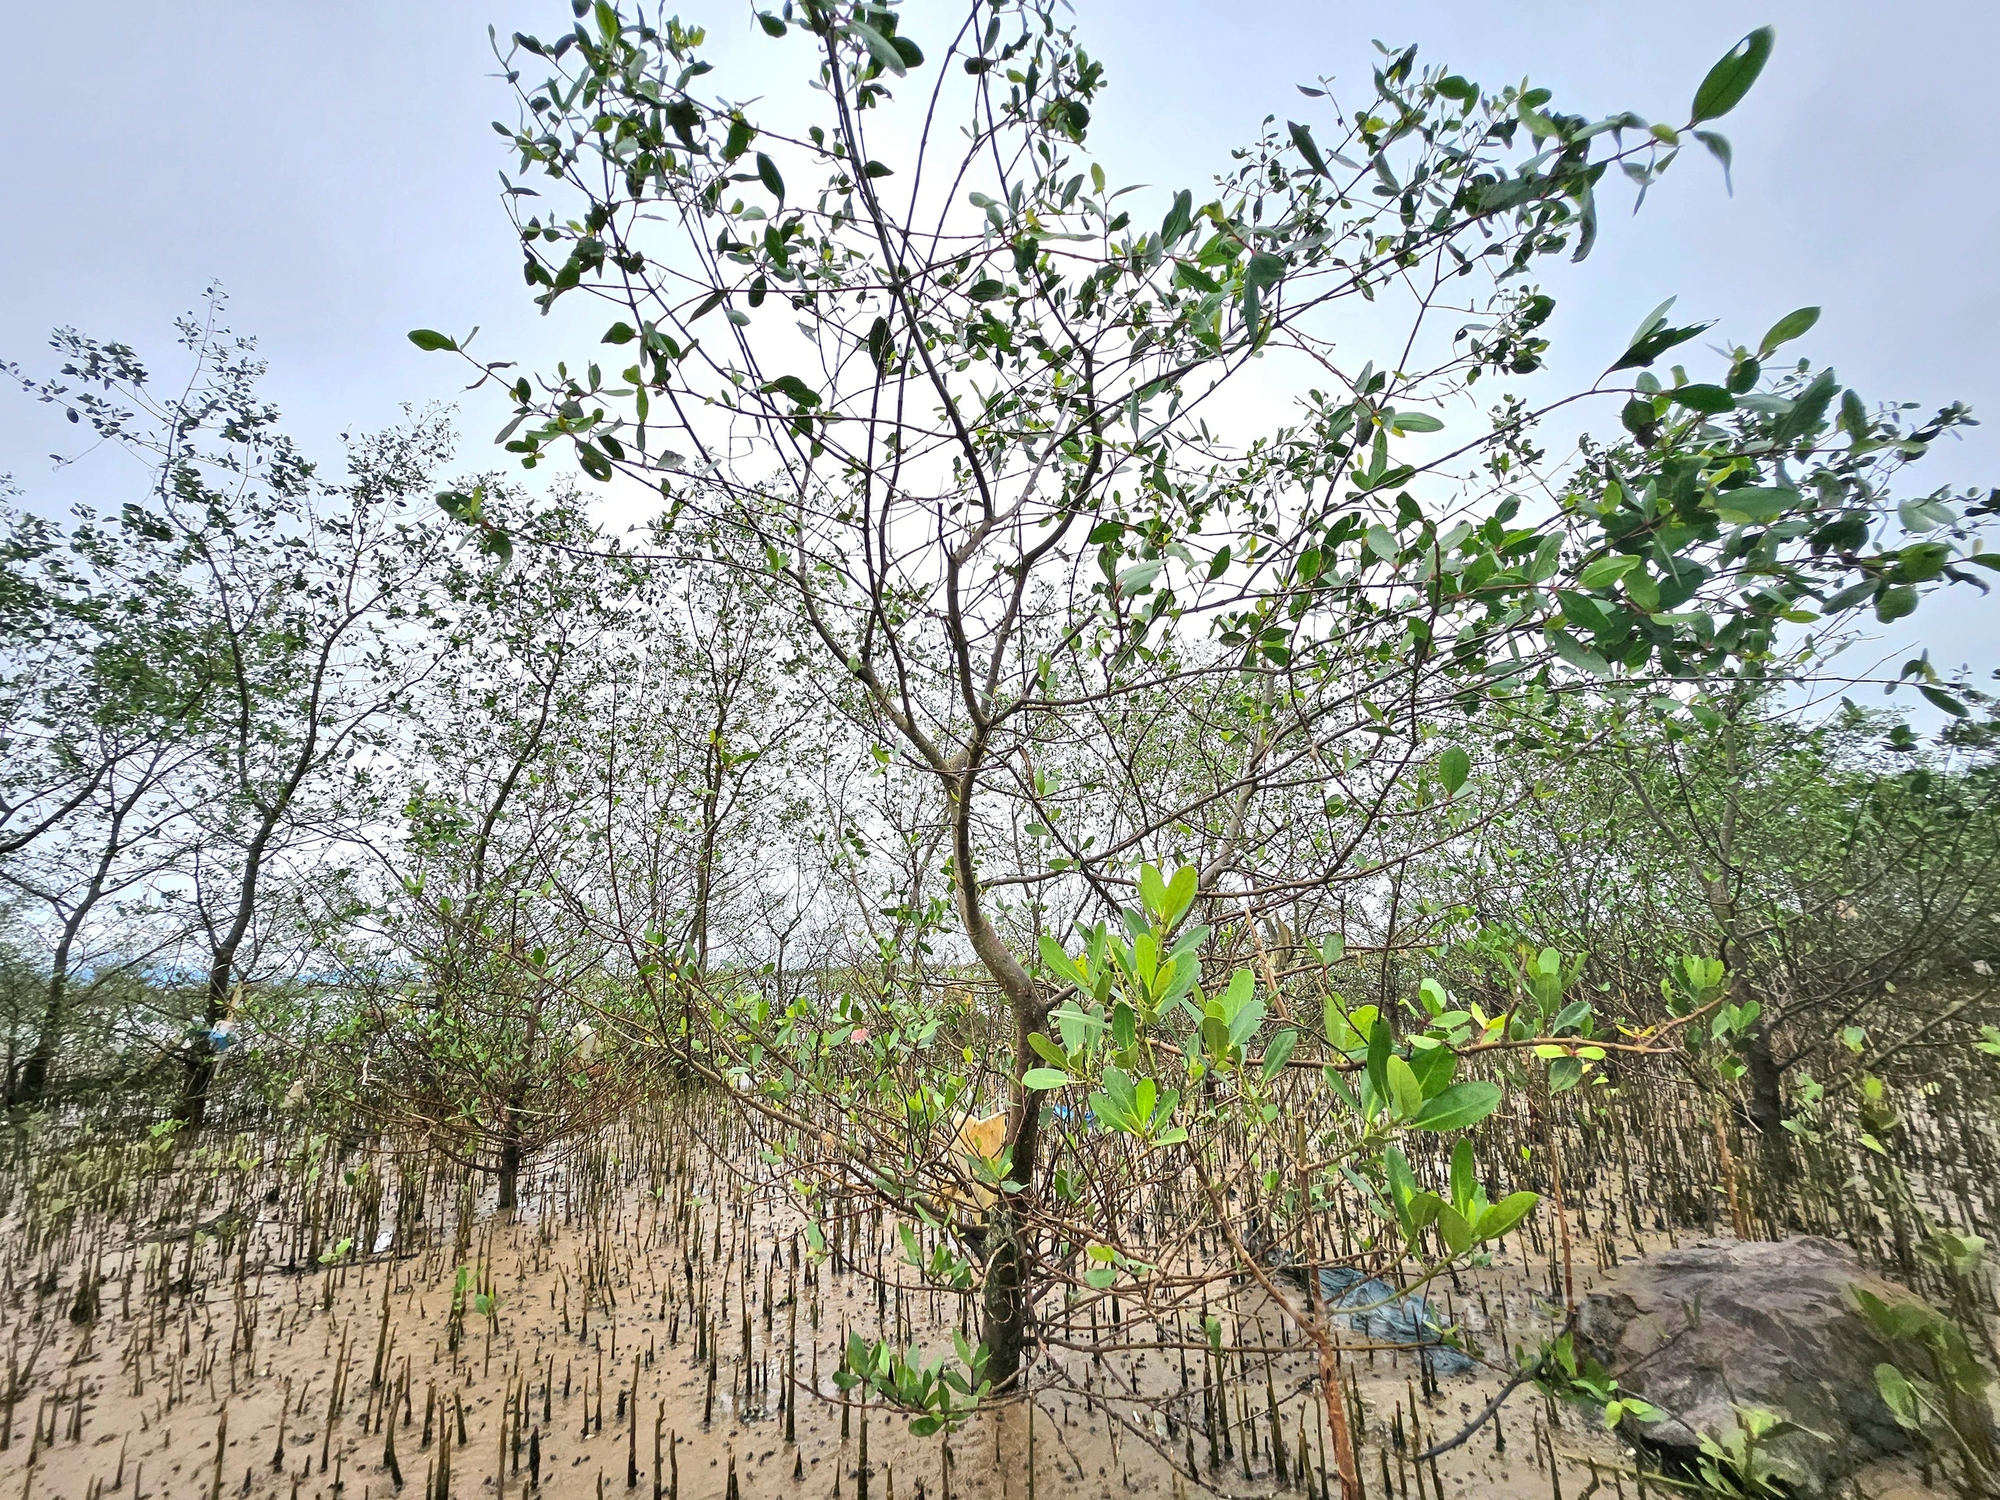 Ở khu rừng ở Quảng Bình, trên cây ra trái lạ, dưới vô số con đặc sản, chim hoang dã bay rợp mặt nước- Ảnh 3.